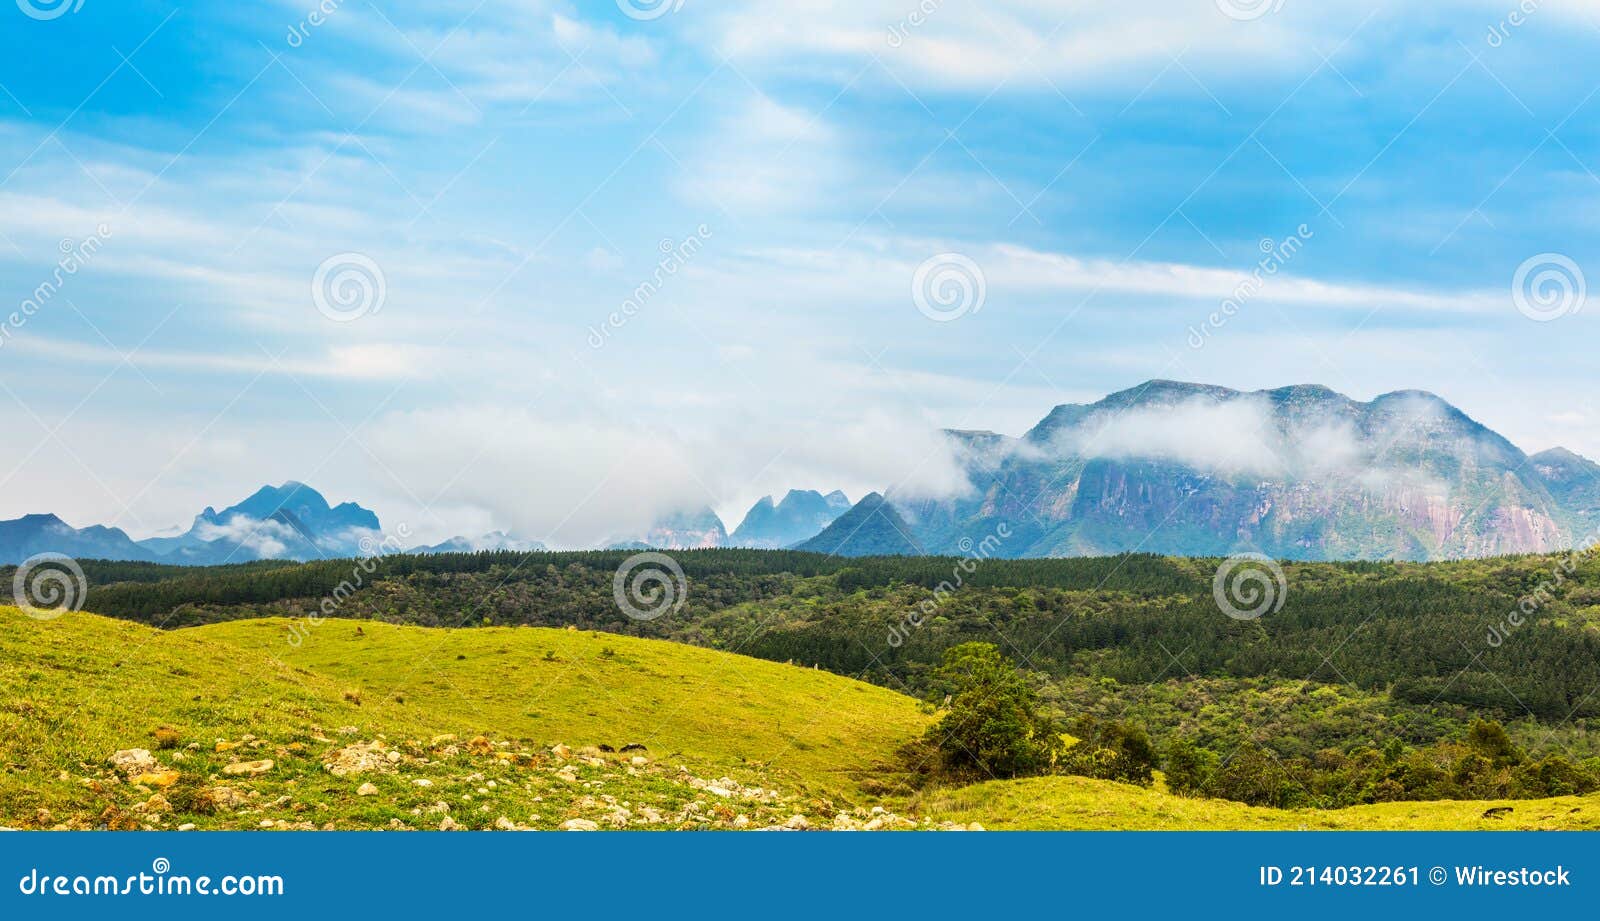 serra geral mountain range in santa catarina, brazil